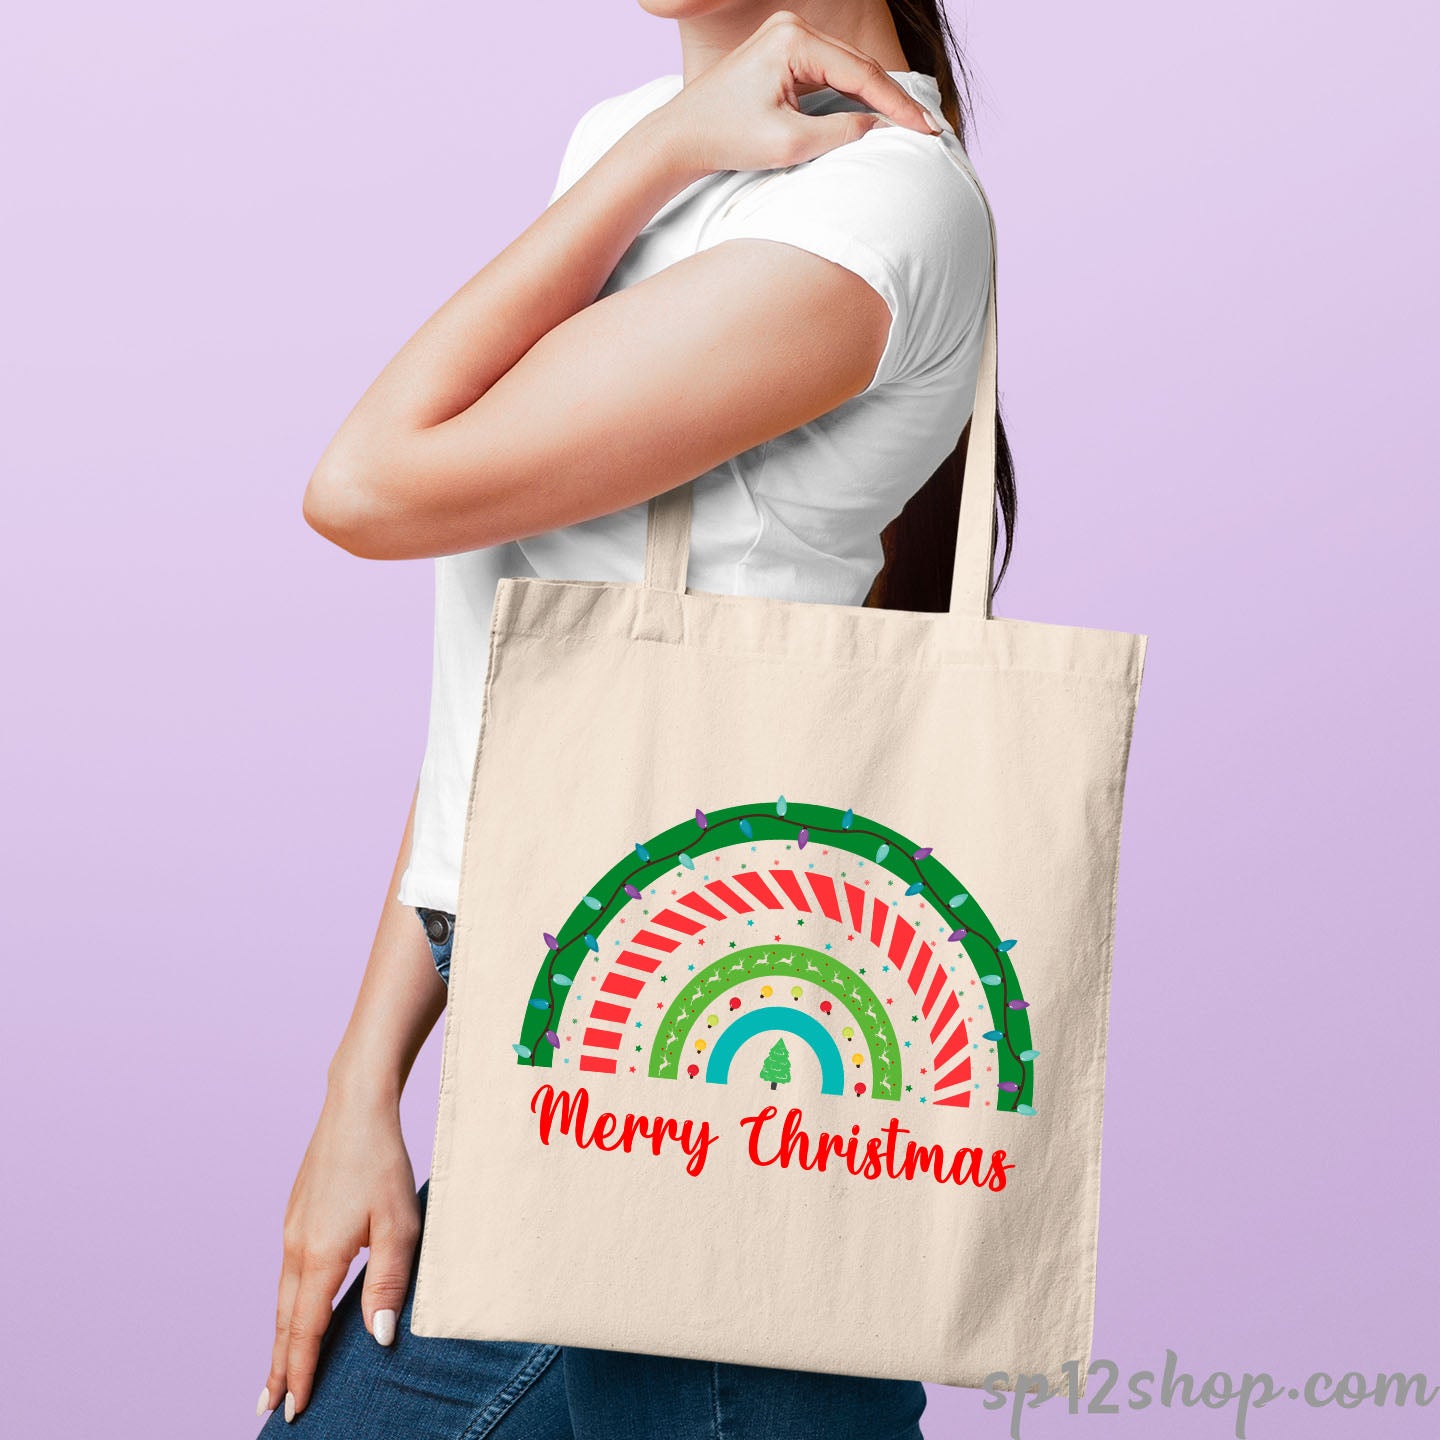 Merry Christmas Rainbow Tote Bag